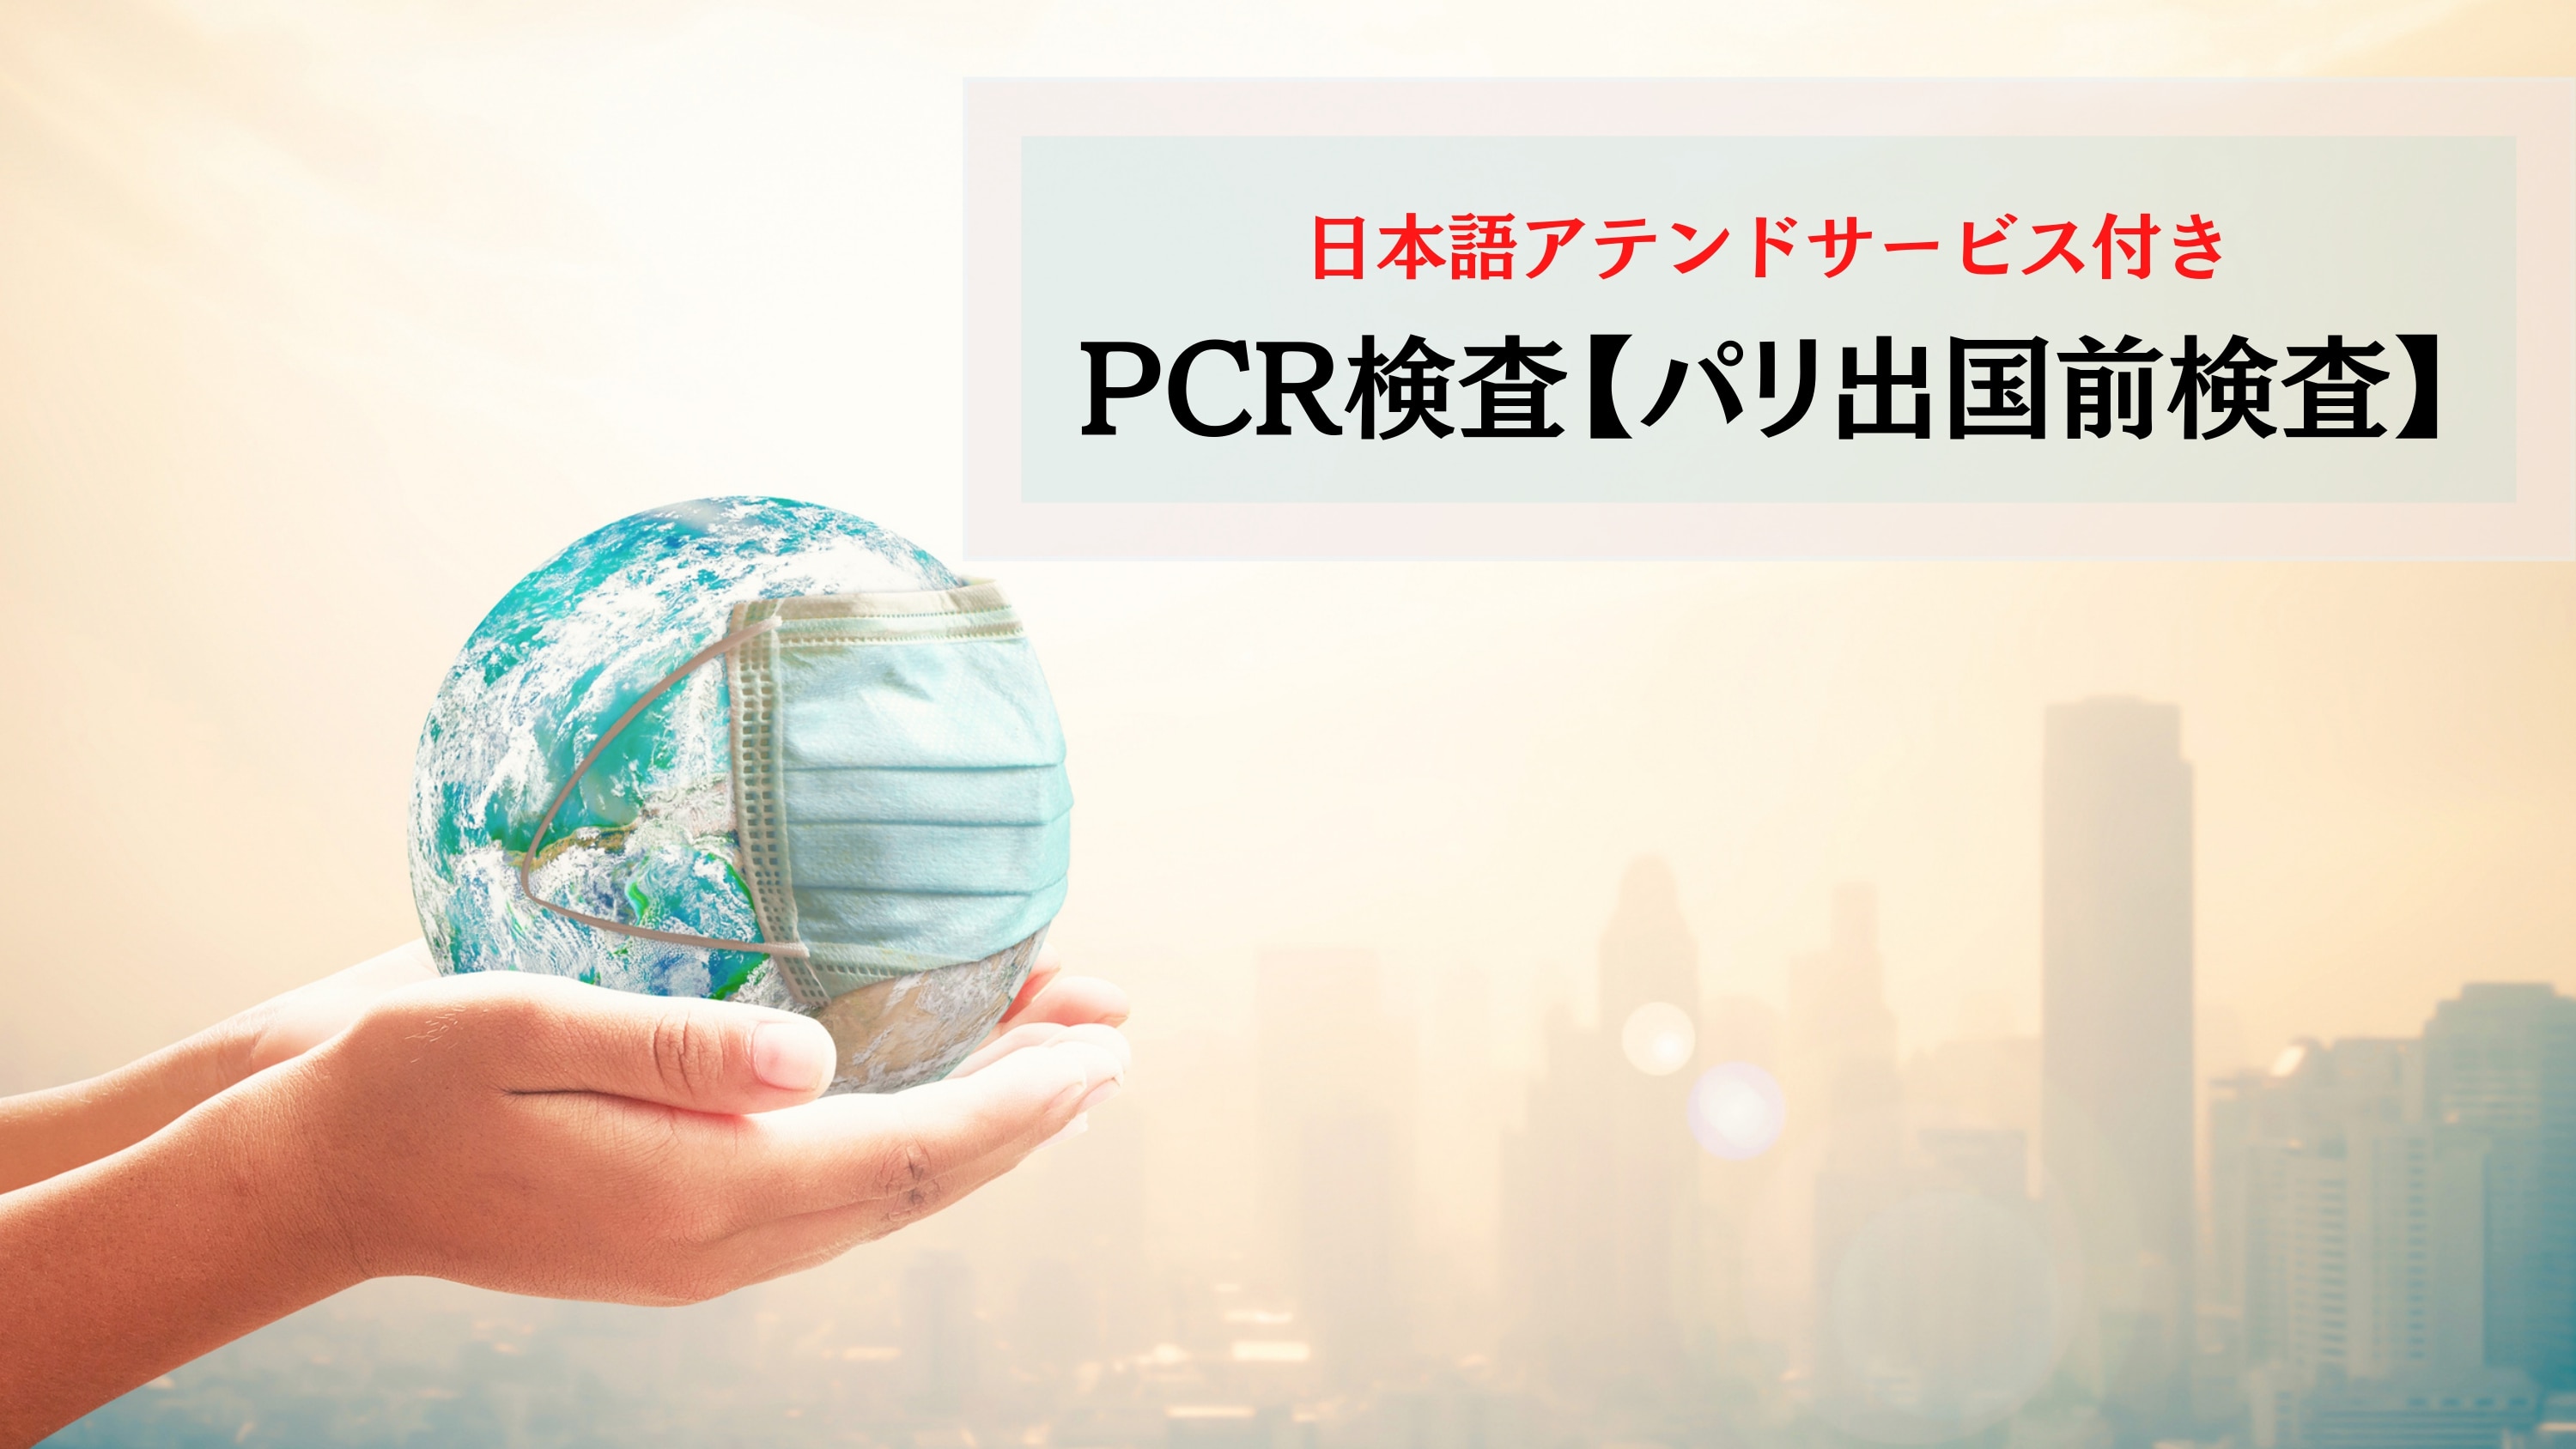 【日本帰国時】新型コロナウイルスPCR検査＜予約(日本語アシスタント付）＞パリ